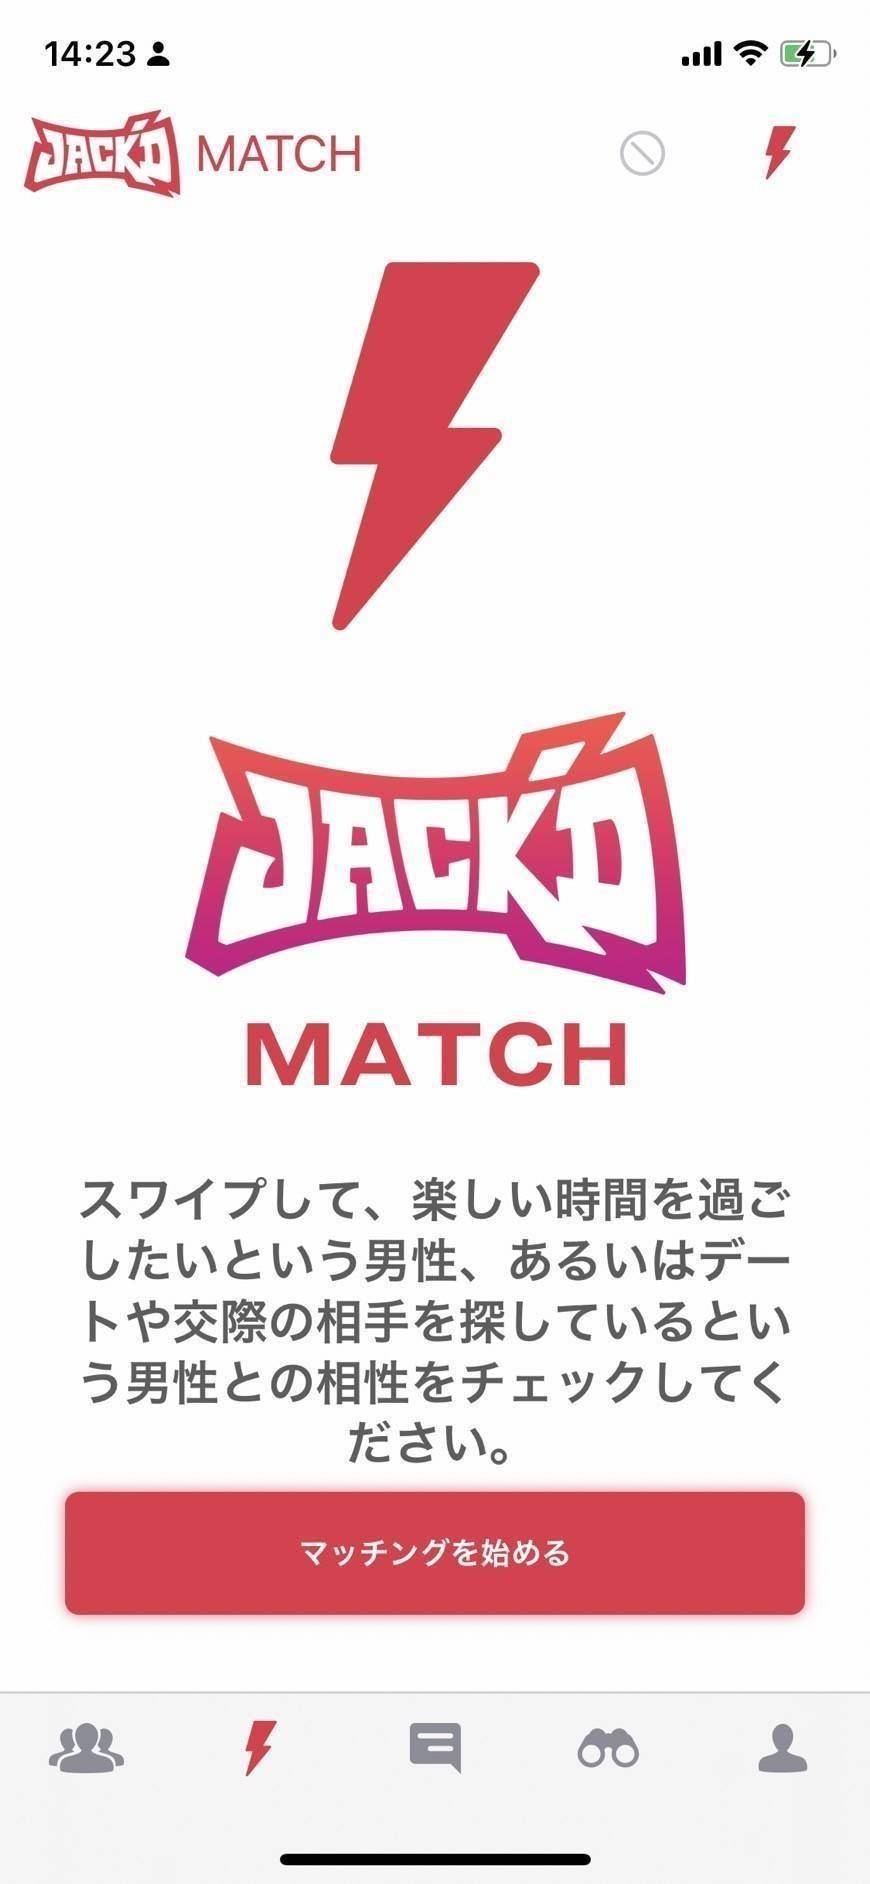 Jack'dのマッチング開始画面